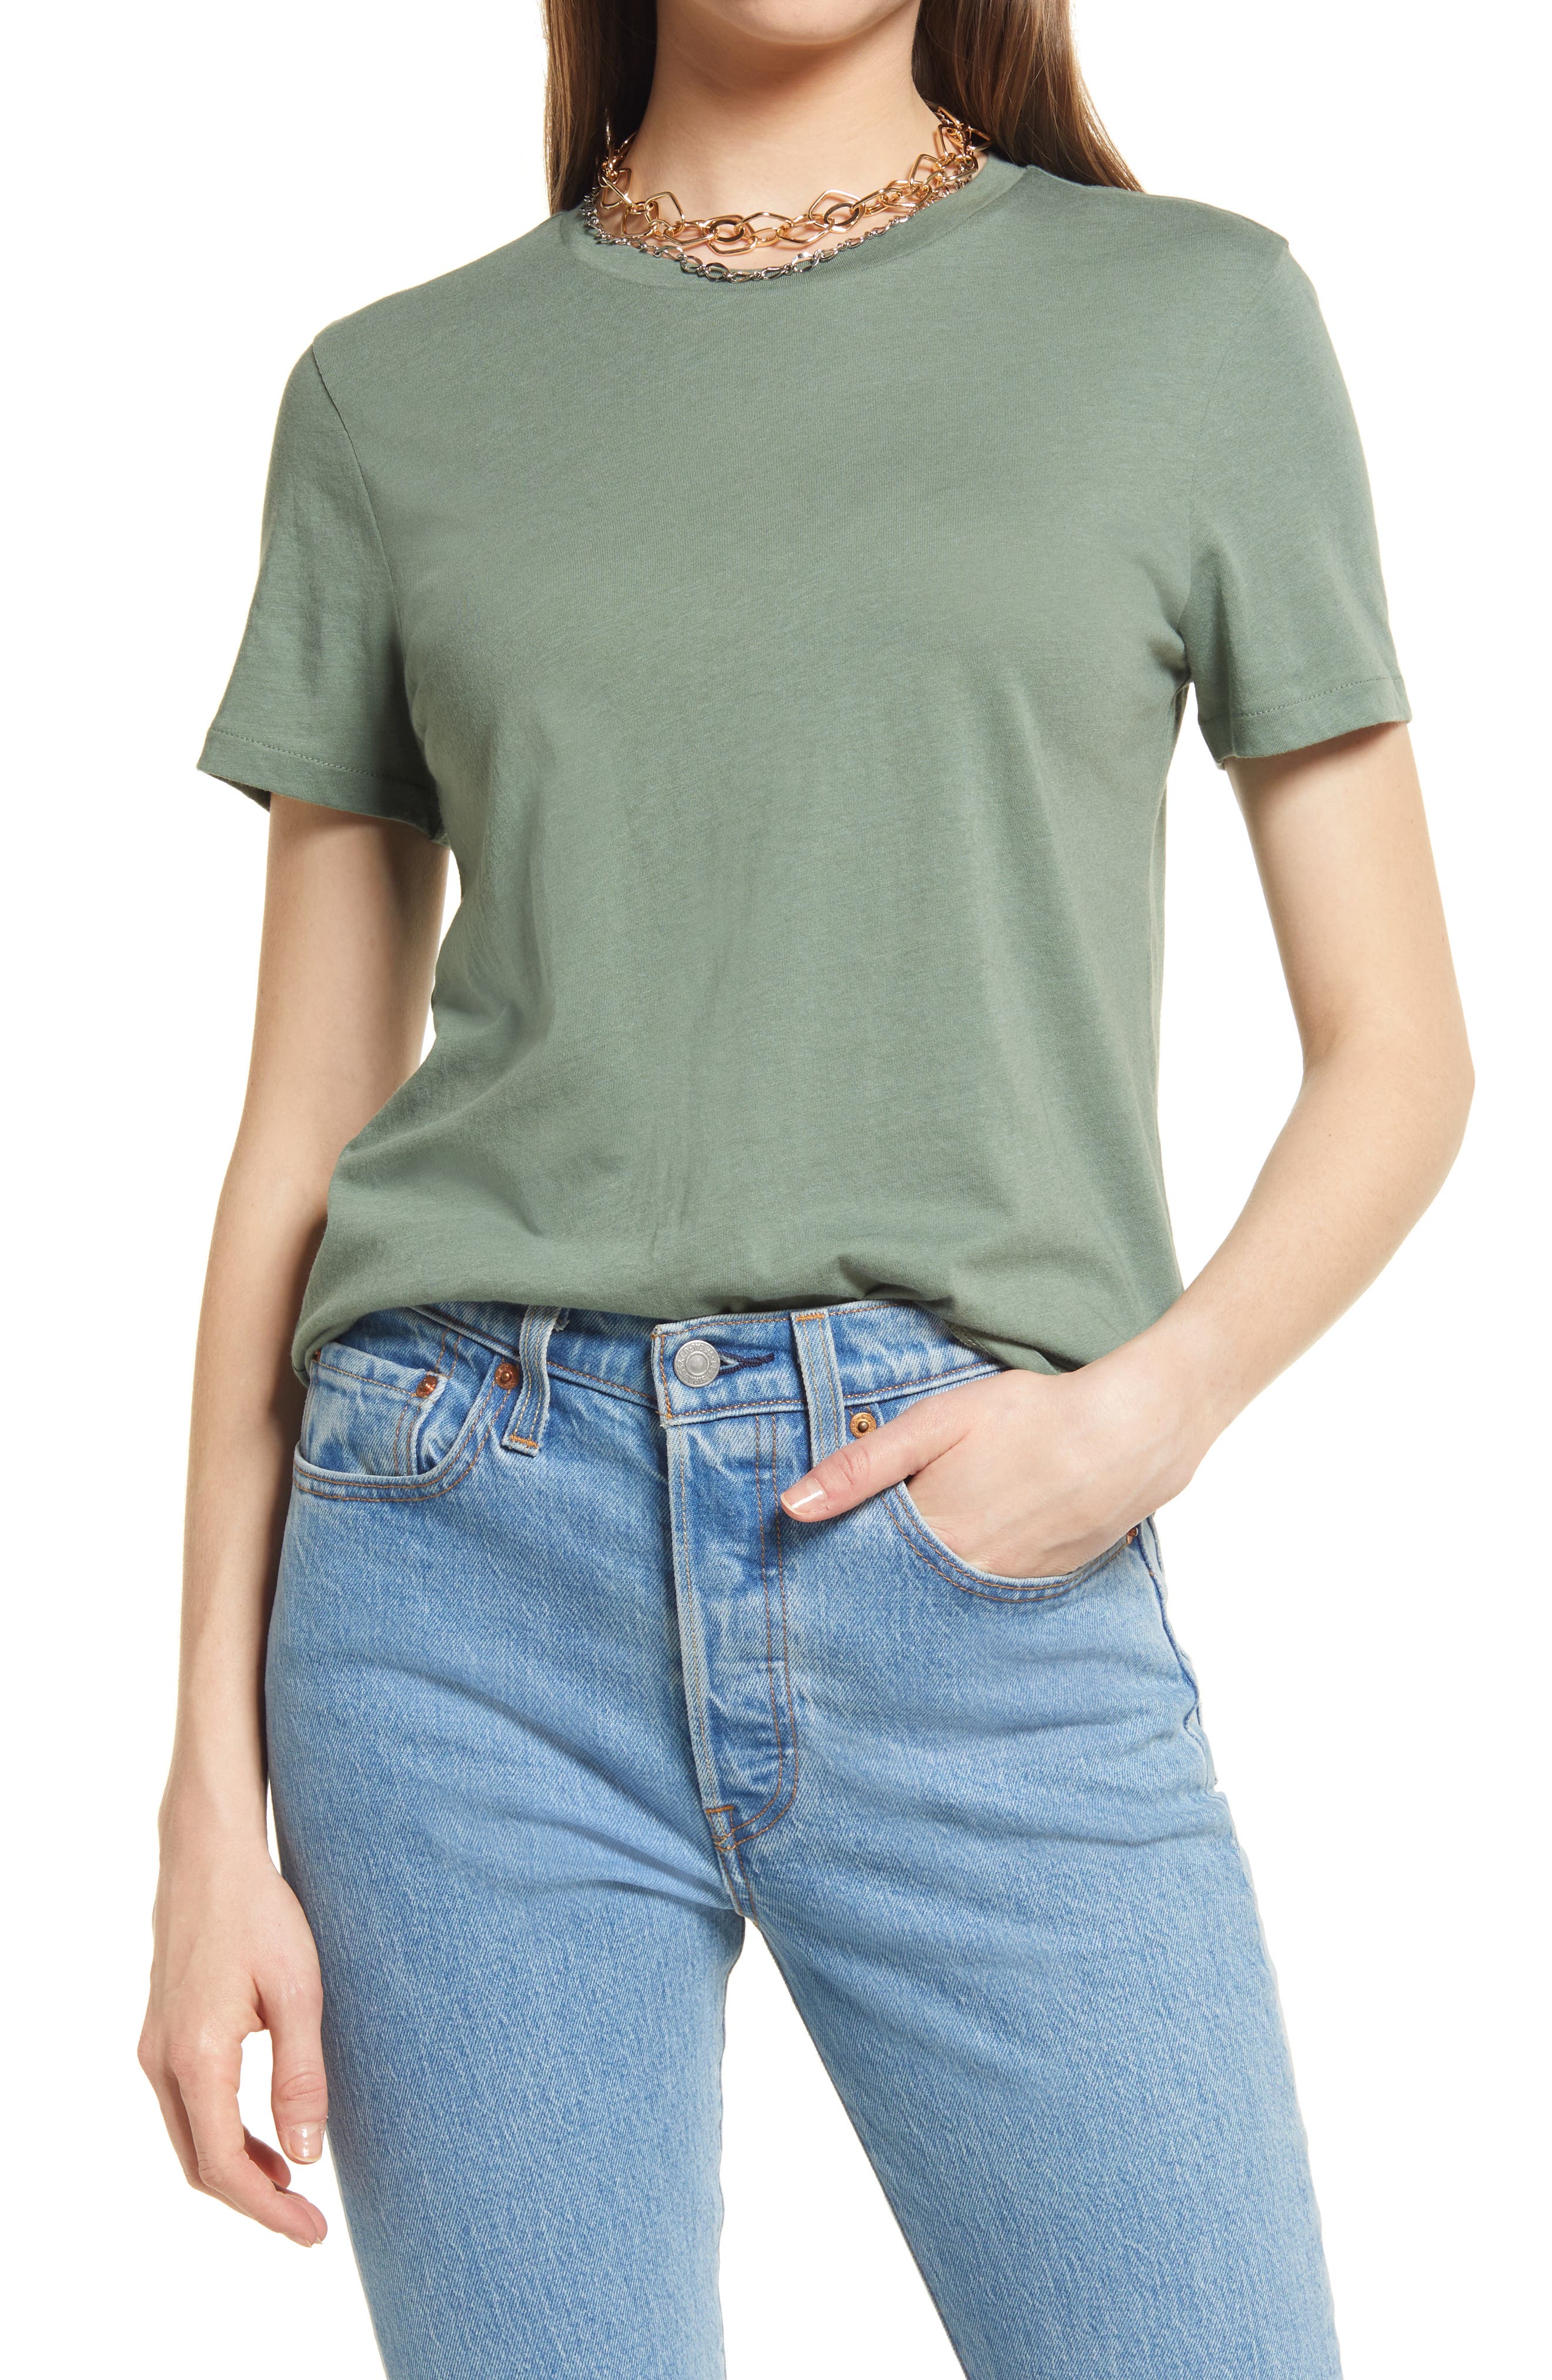 Angela blouse discount 68% Brown XL WOMEN FASHION Shirts & T-shirts Blouse Print 